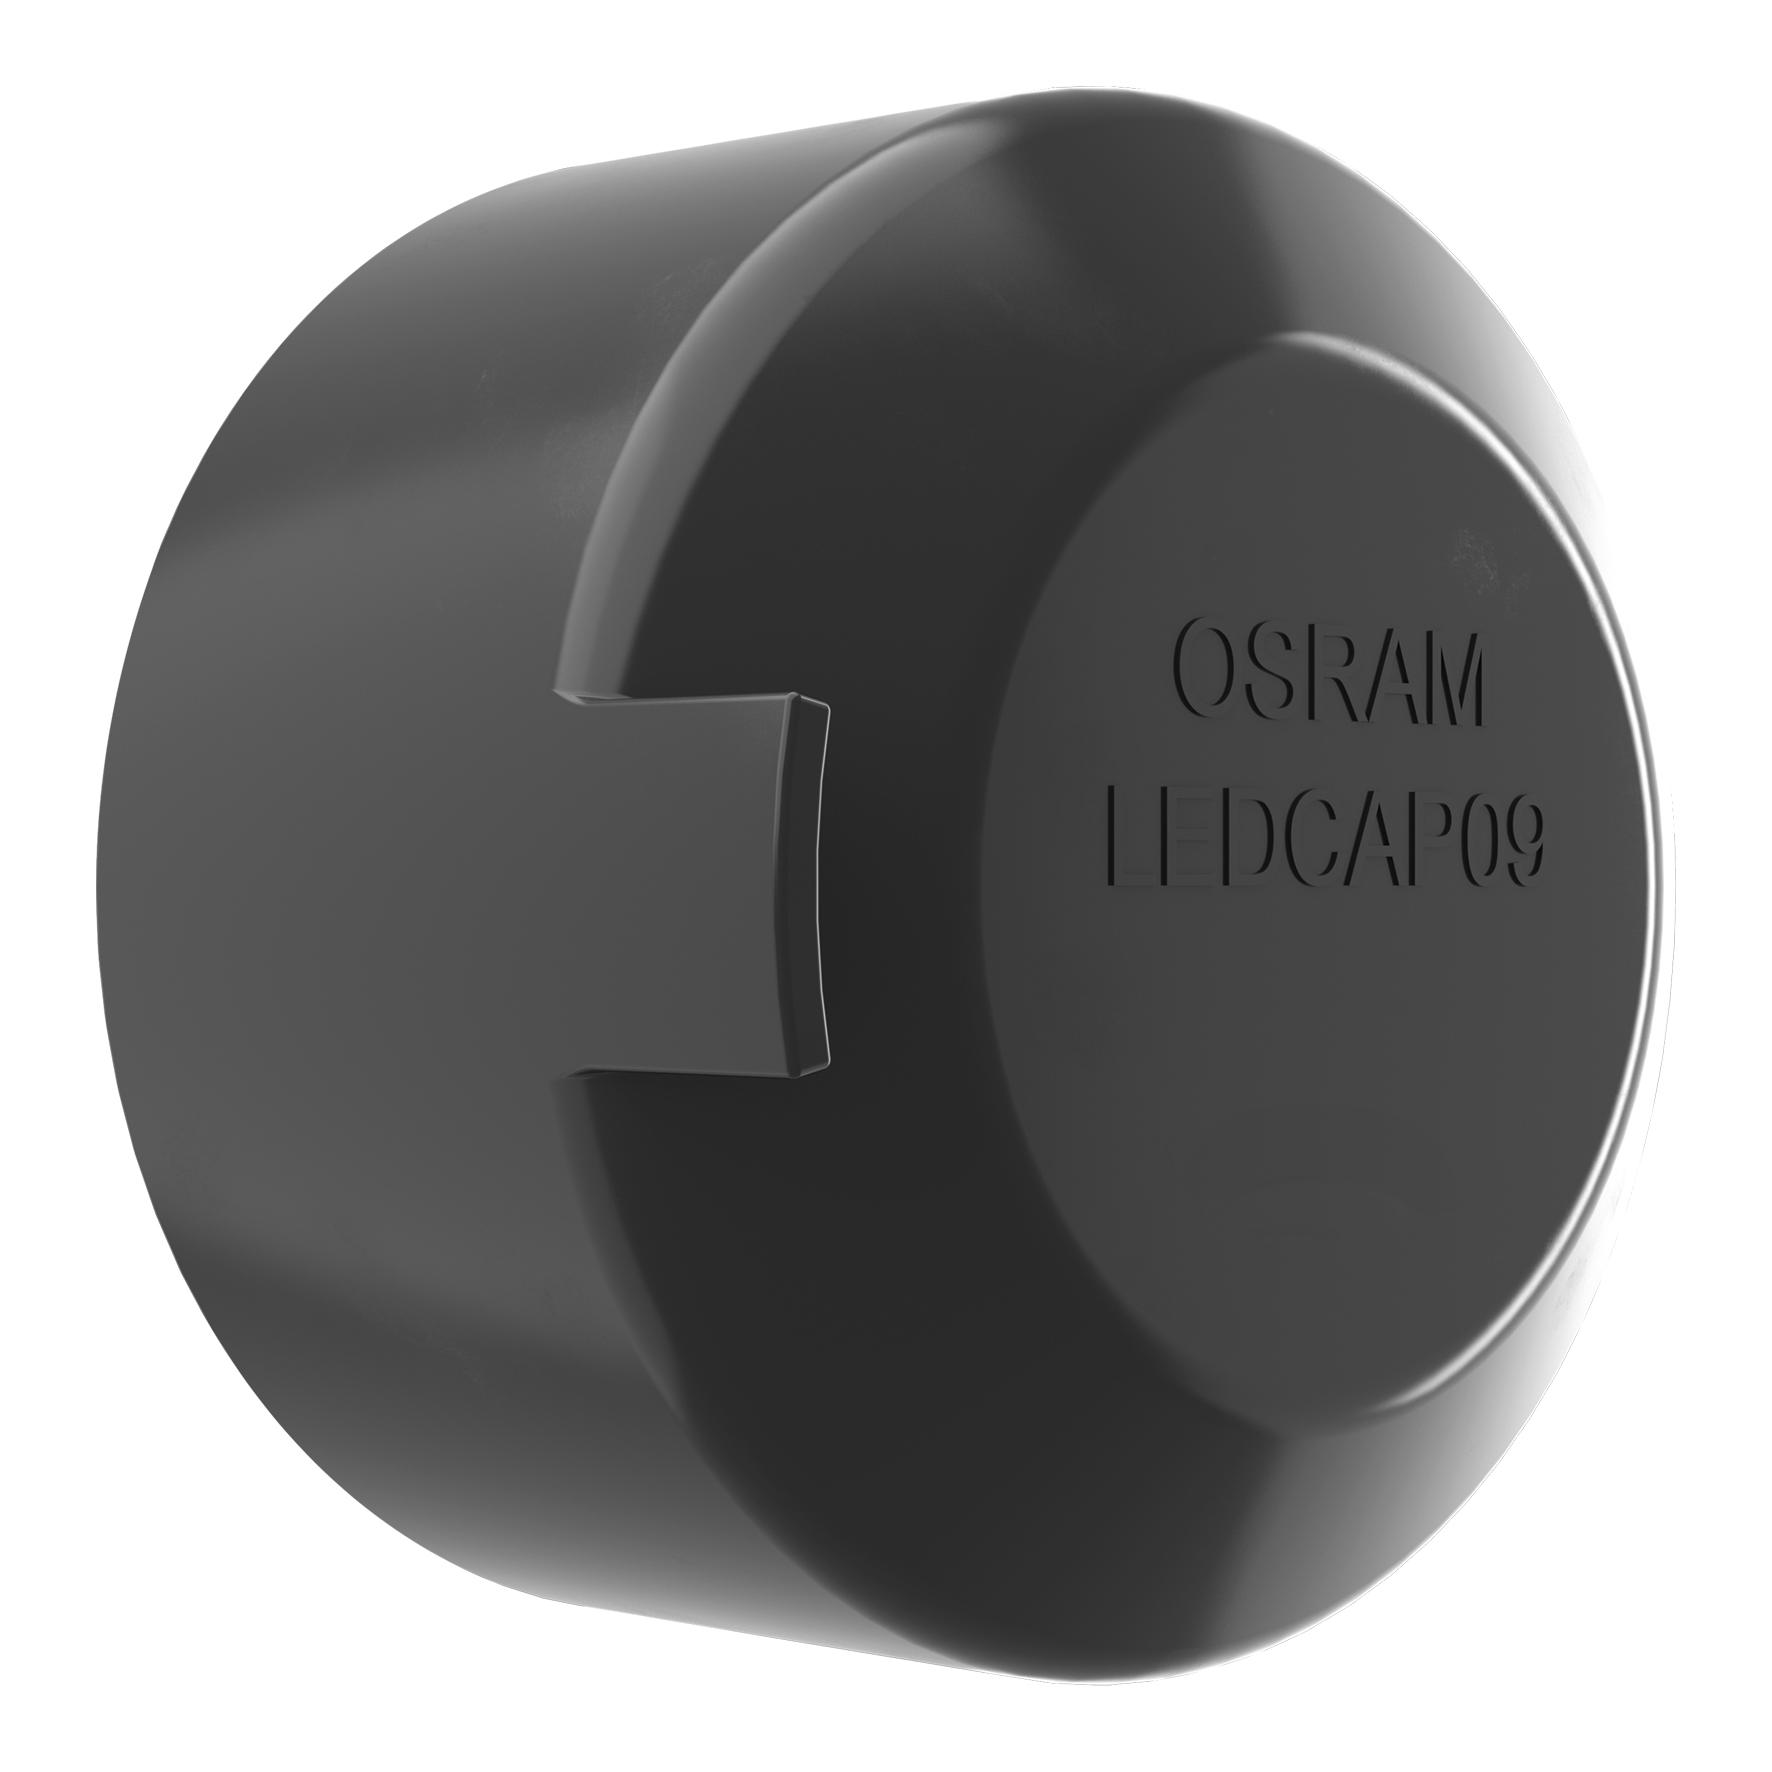 Osram LEDEC01 LEDriving ERROR CANCELER adapters for H7 LED bulbs - MK LED